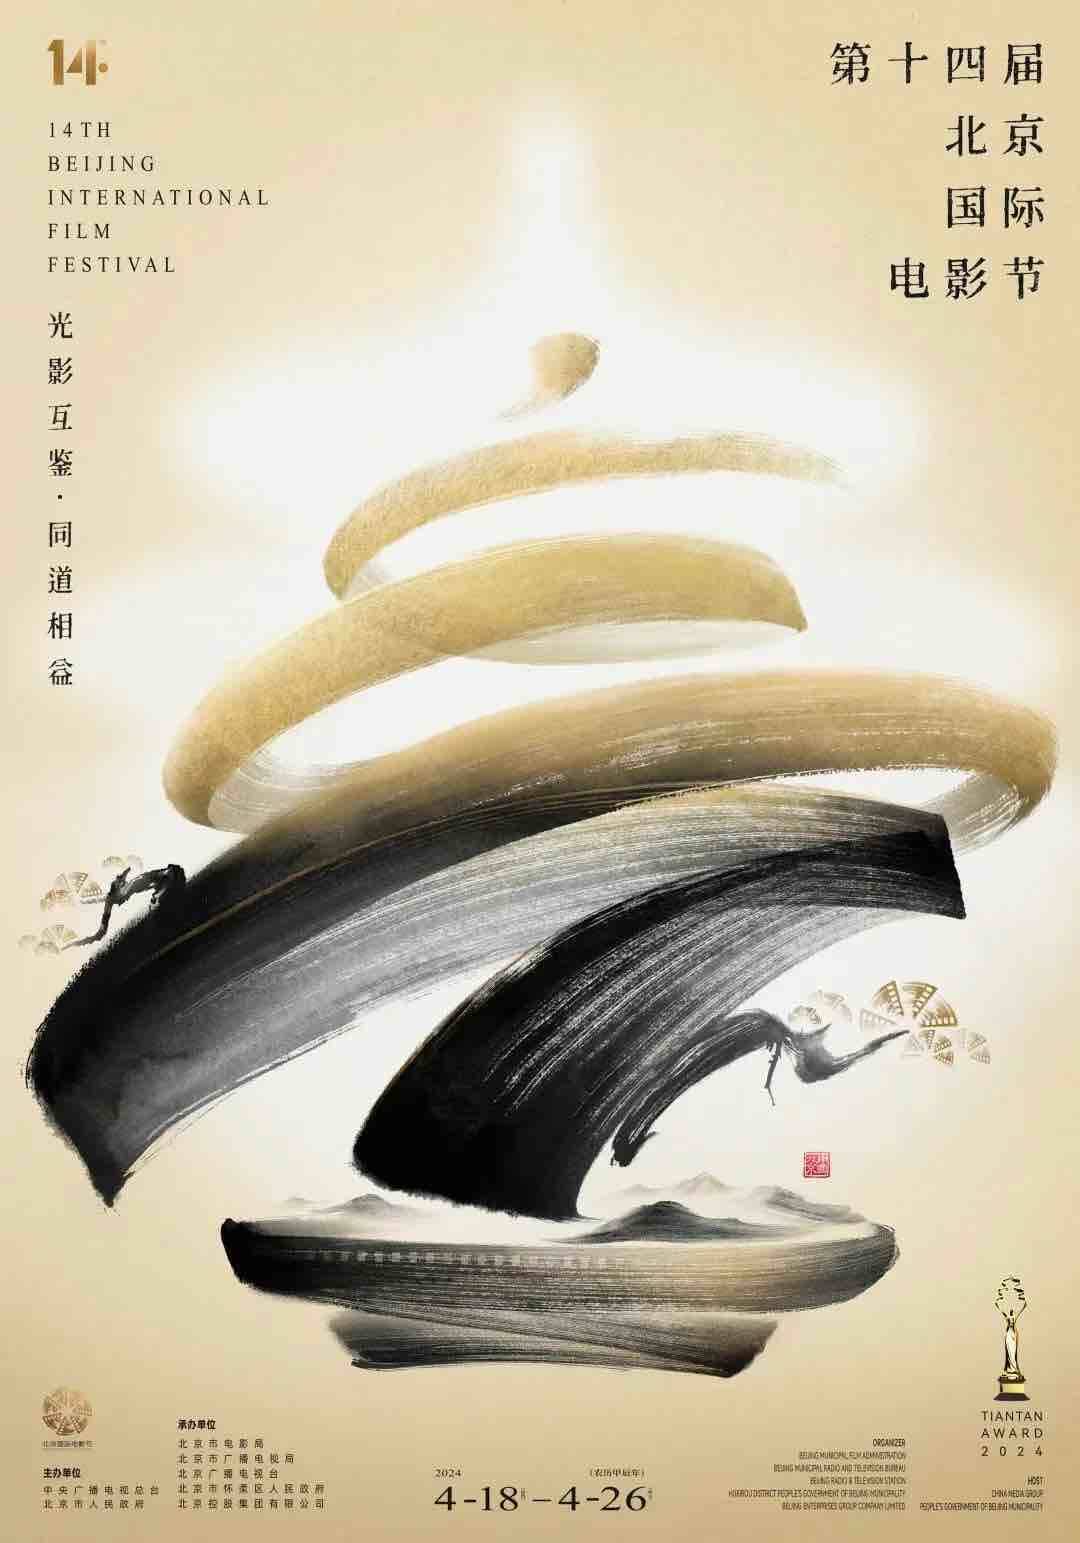 北京国际电影节4月18日开幕 天坛奖国际评奖委员会阵容、主海报公布